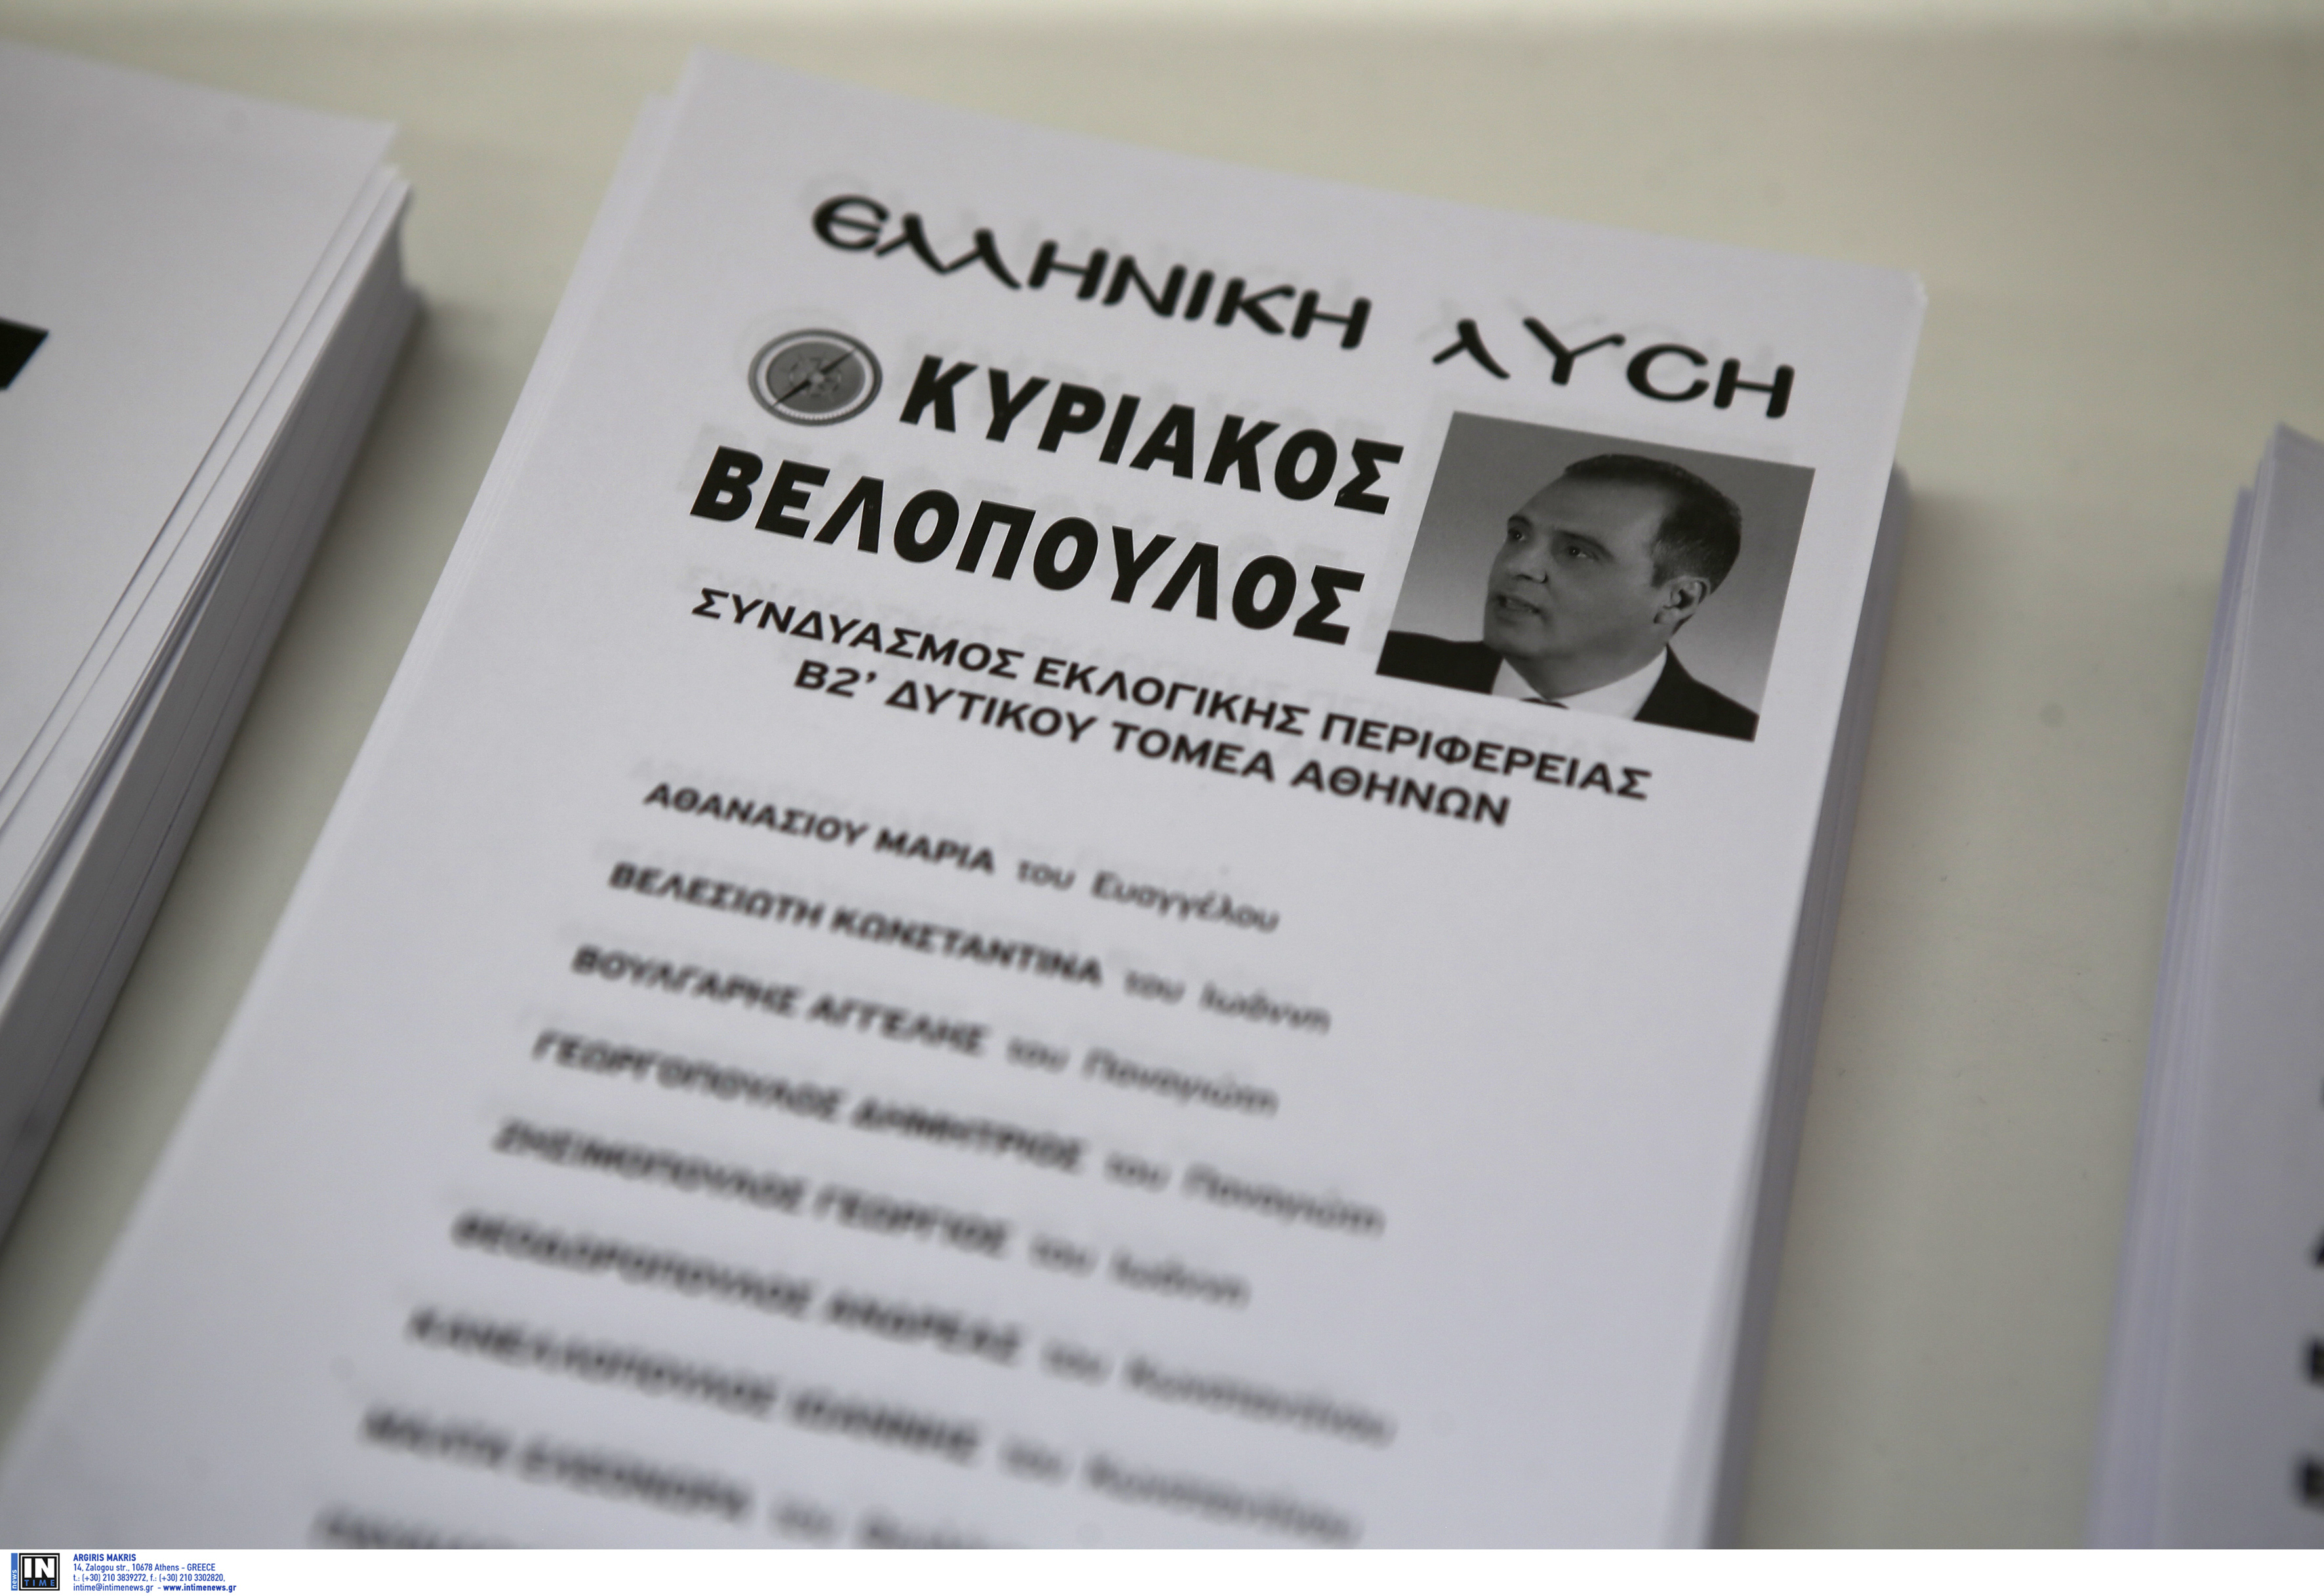 “Ελληνική Λύση”: Καταγγελία ότι δε δίνουν ψηφοδέλτιά της σε εκλογικά τμήματα!